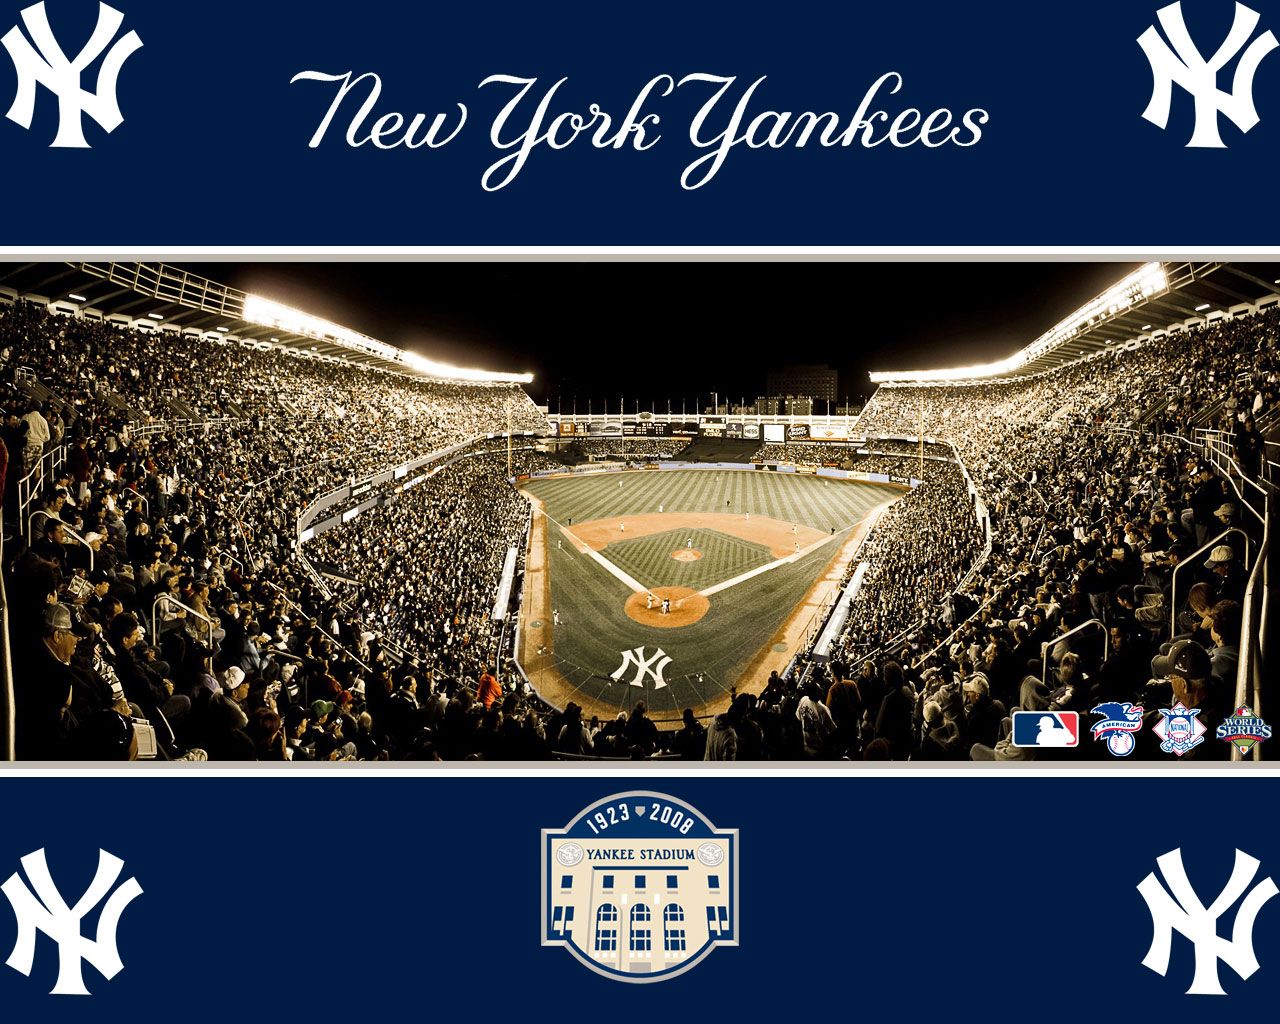 New York Yankees 1280×1024 Wallpaper | Baseball Wallpapers